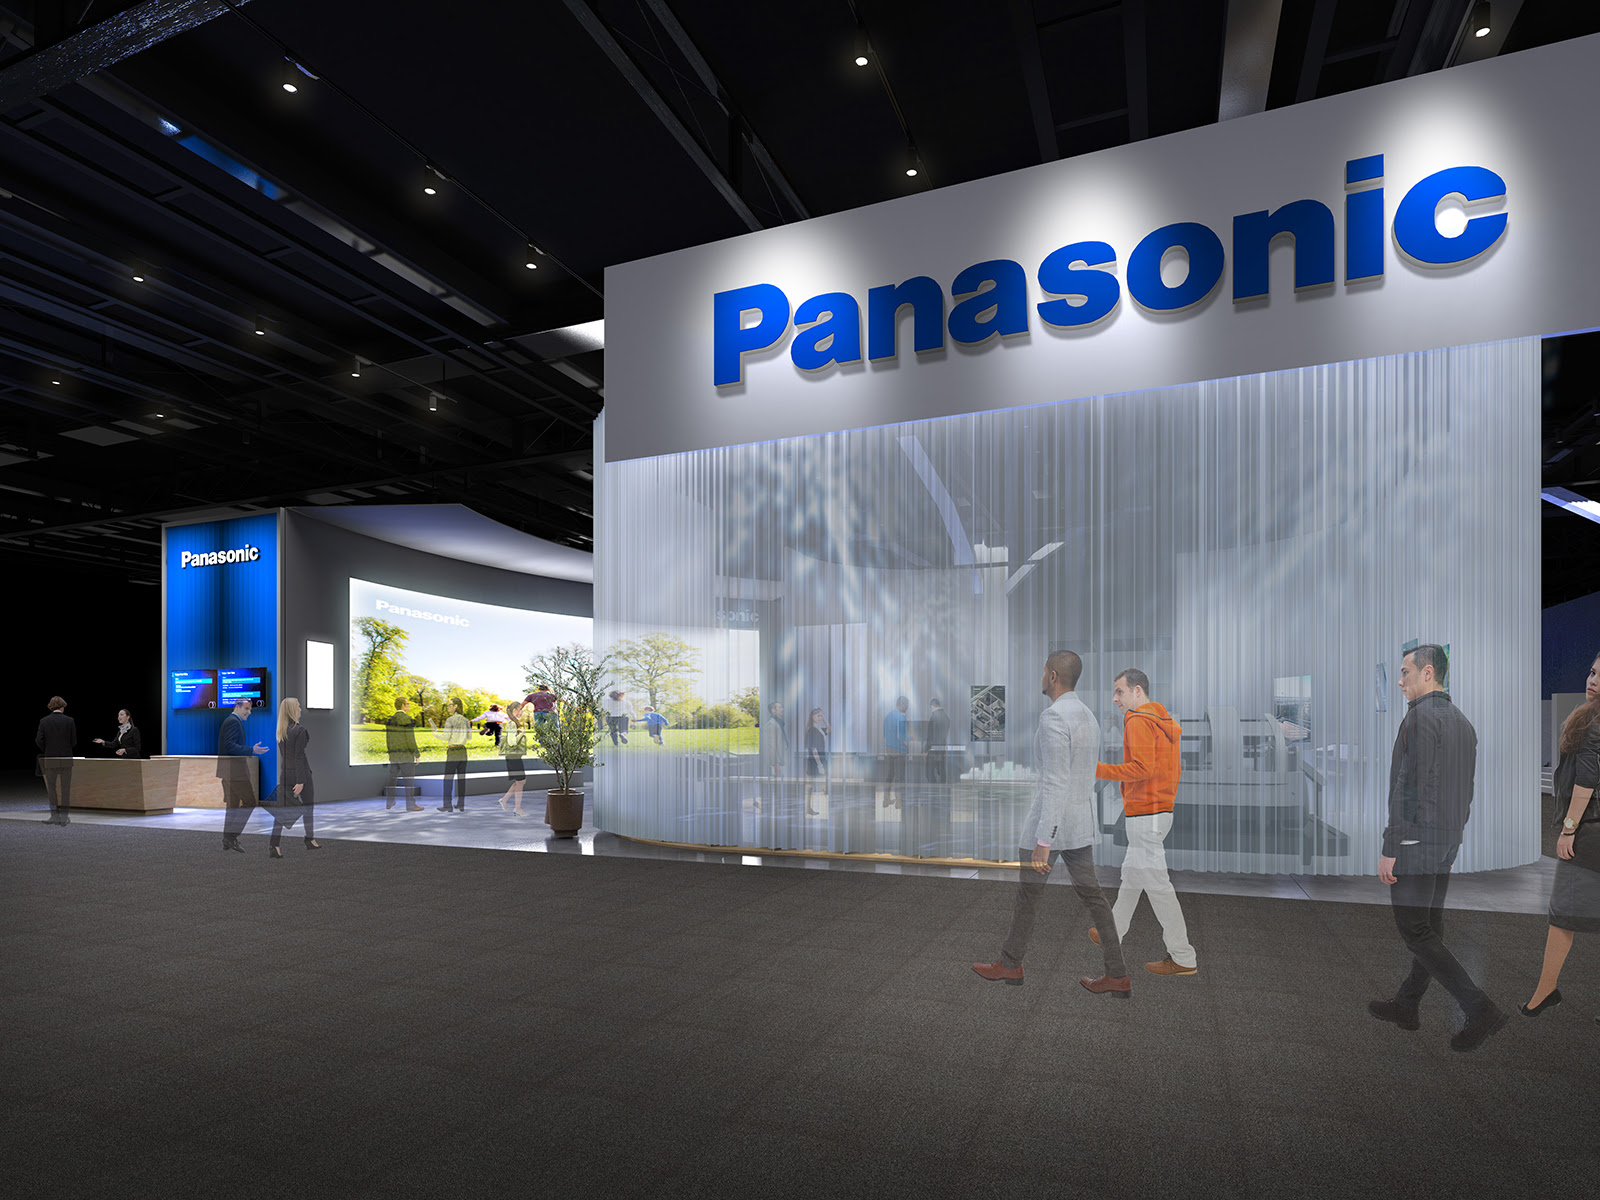 La calidad visual se eleva con #Panasonic